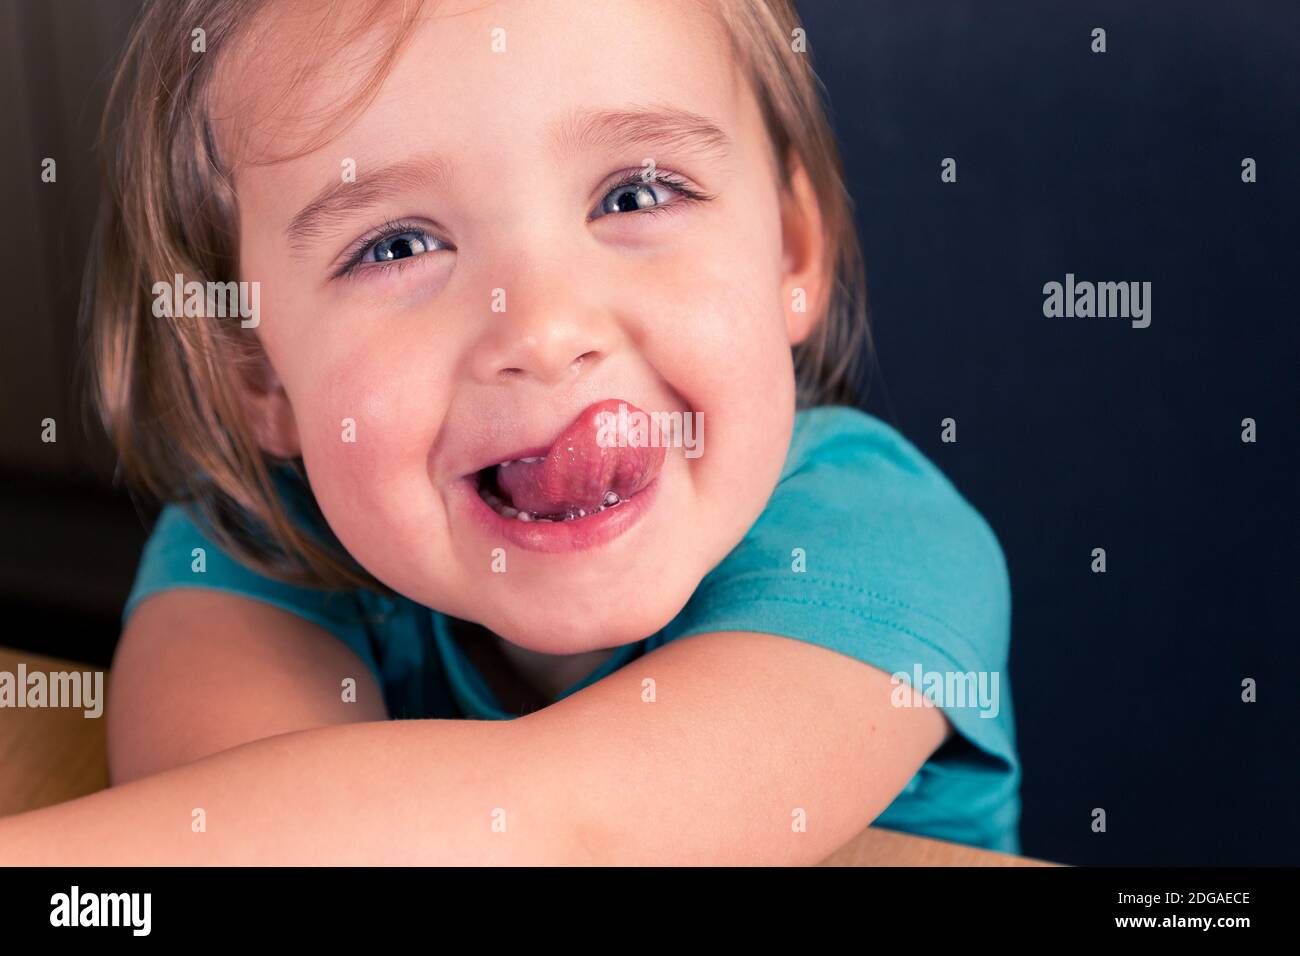 Nahaufnahme Porträt von fröhlich kaukasischen Kleinkind Mädchen zeigt Zunge, lustige Kinder Gesicht Stockfoto